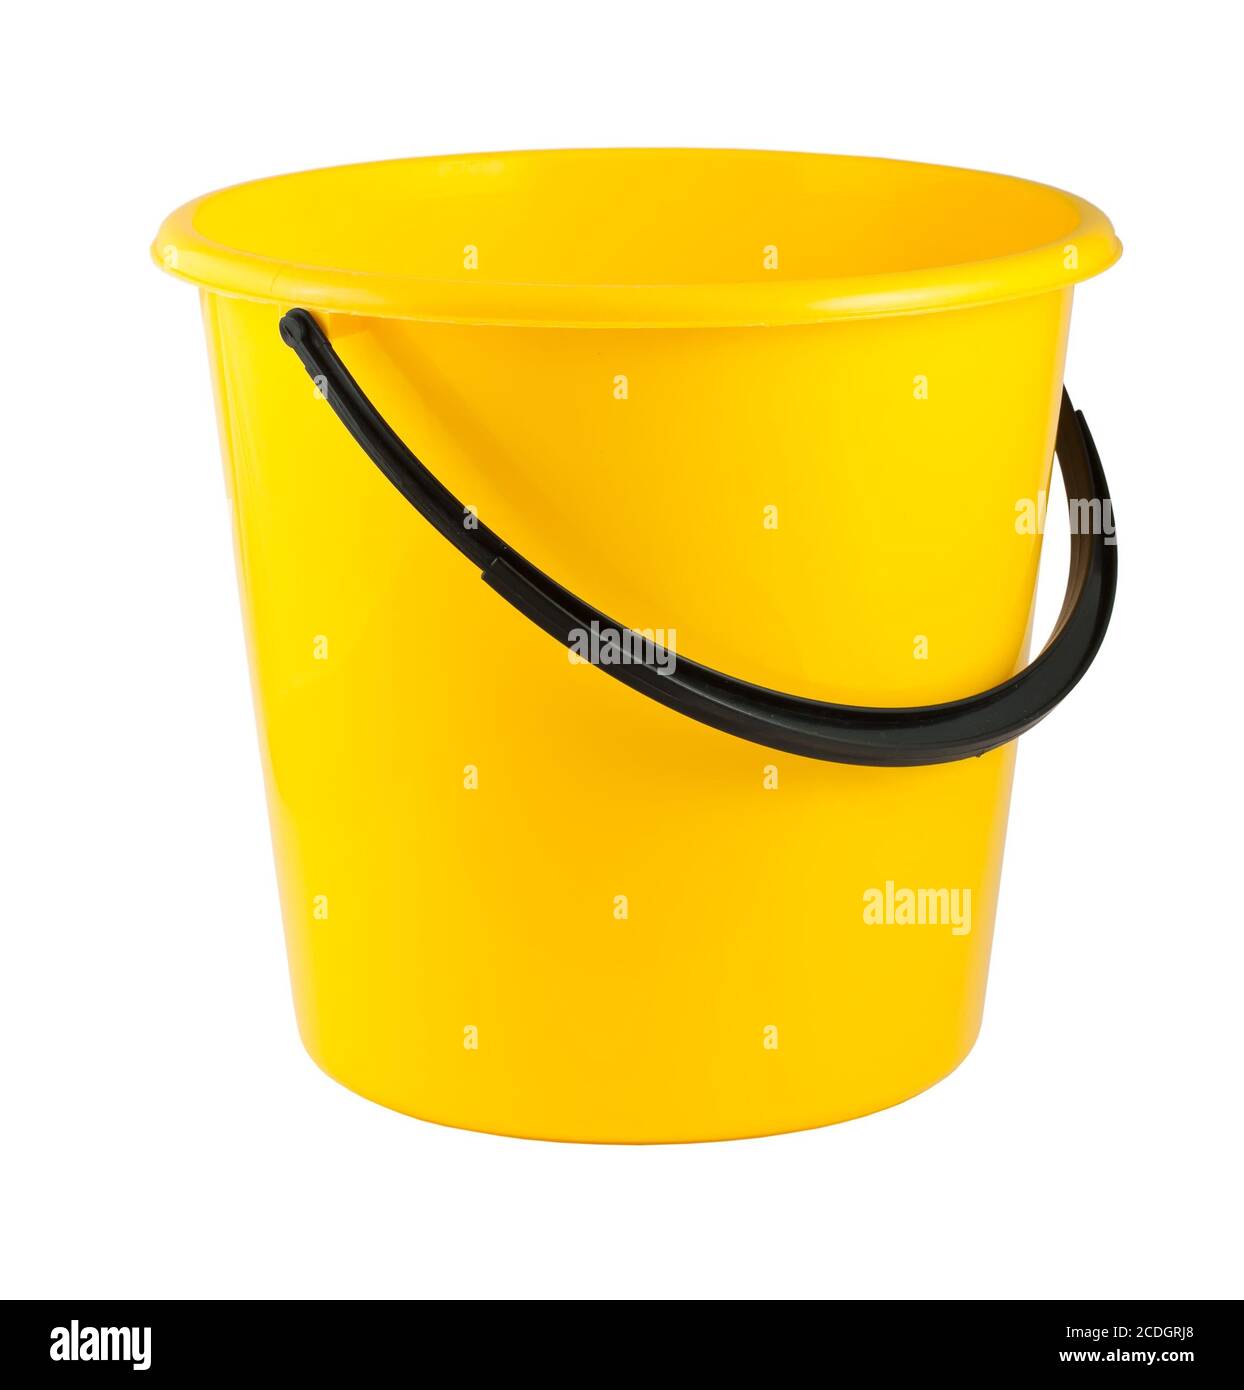 Cuchara de plástico amarillo Foto de stock